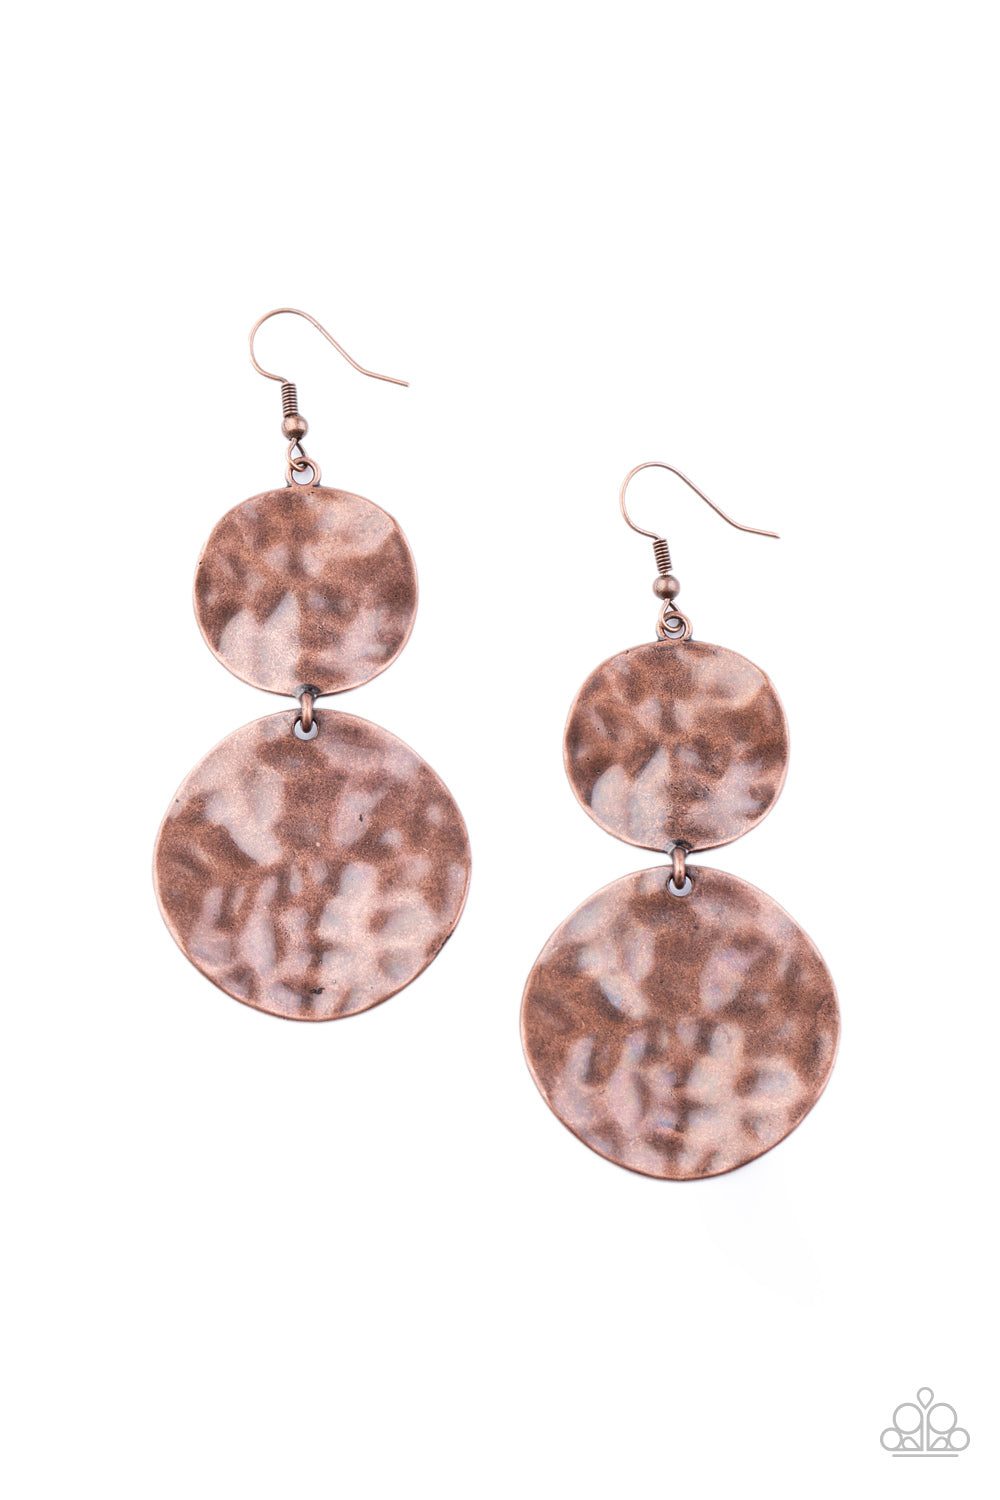 HARDWARE-Headed - Copper Earrings